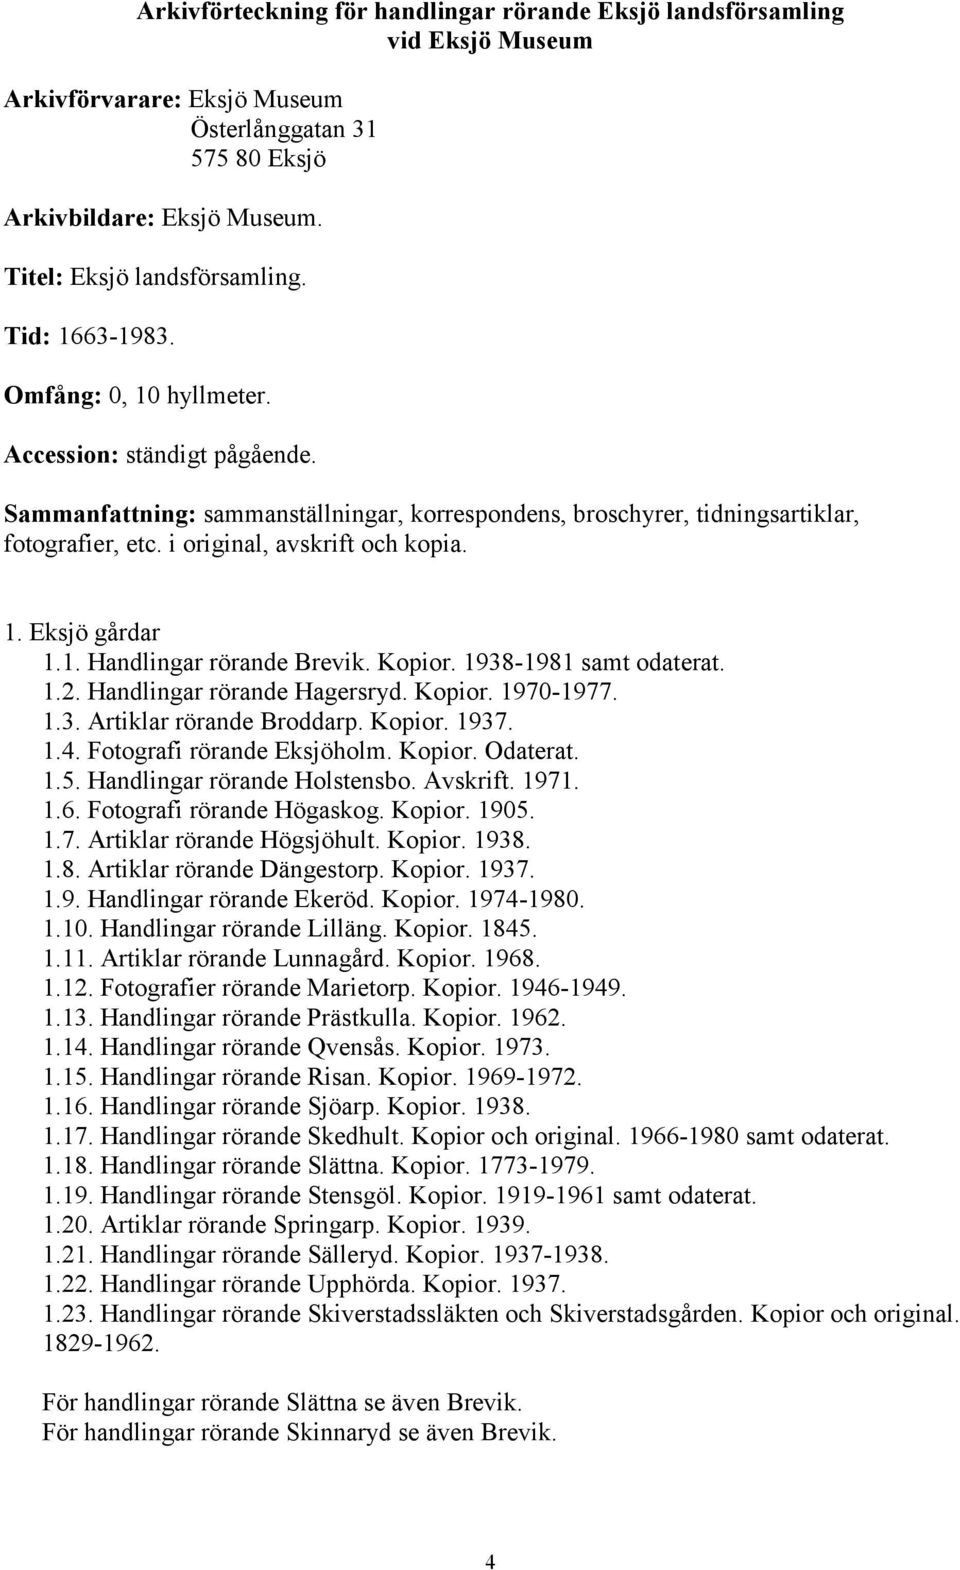 1938-1981 samt odaterat. 1.2. Handlingar rörande Hagersryd. Kopior. 1970-1977. 1.3. Artiklar rörande Broddarp. Kopior. 1937. 1.4. Fotografi rörande Eksjöholm. Kopior. Odaterat. 1.5.